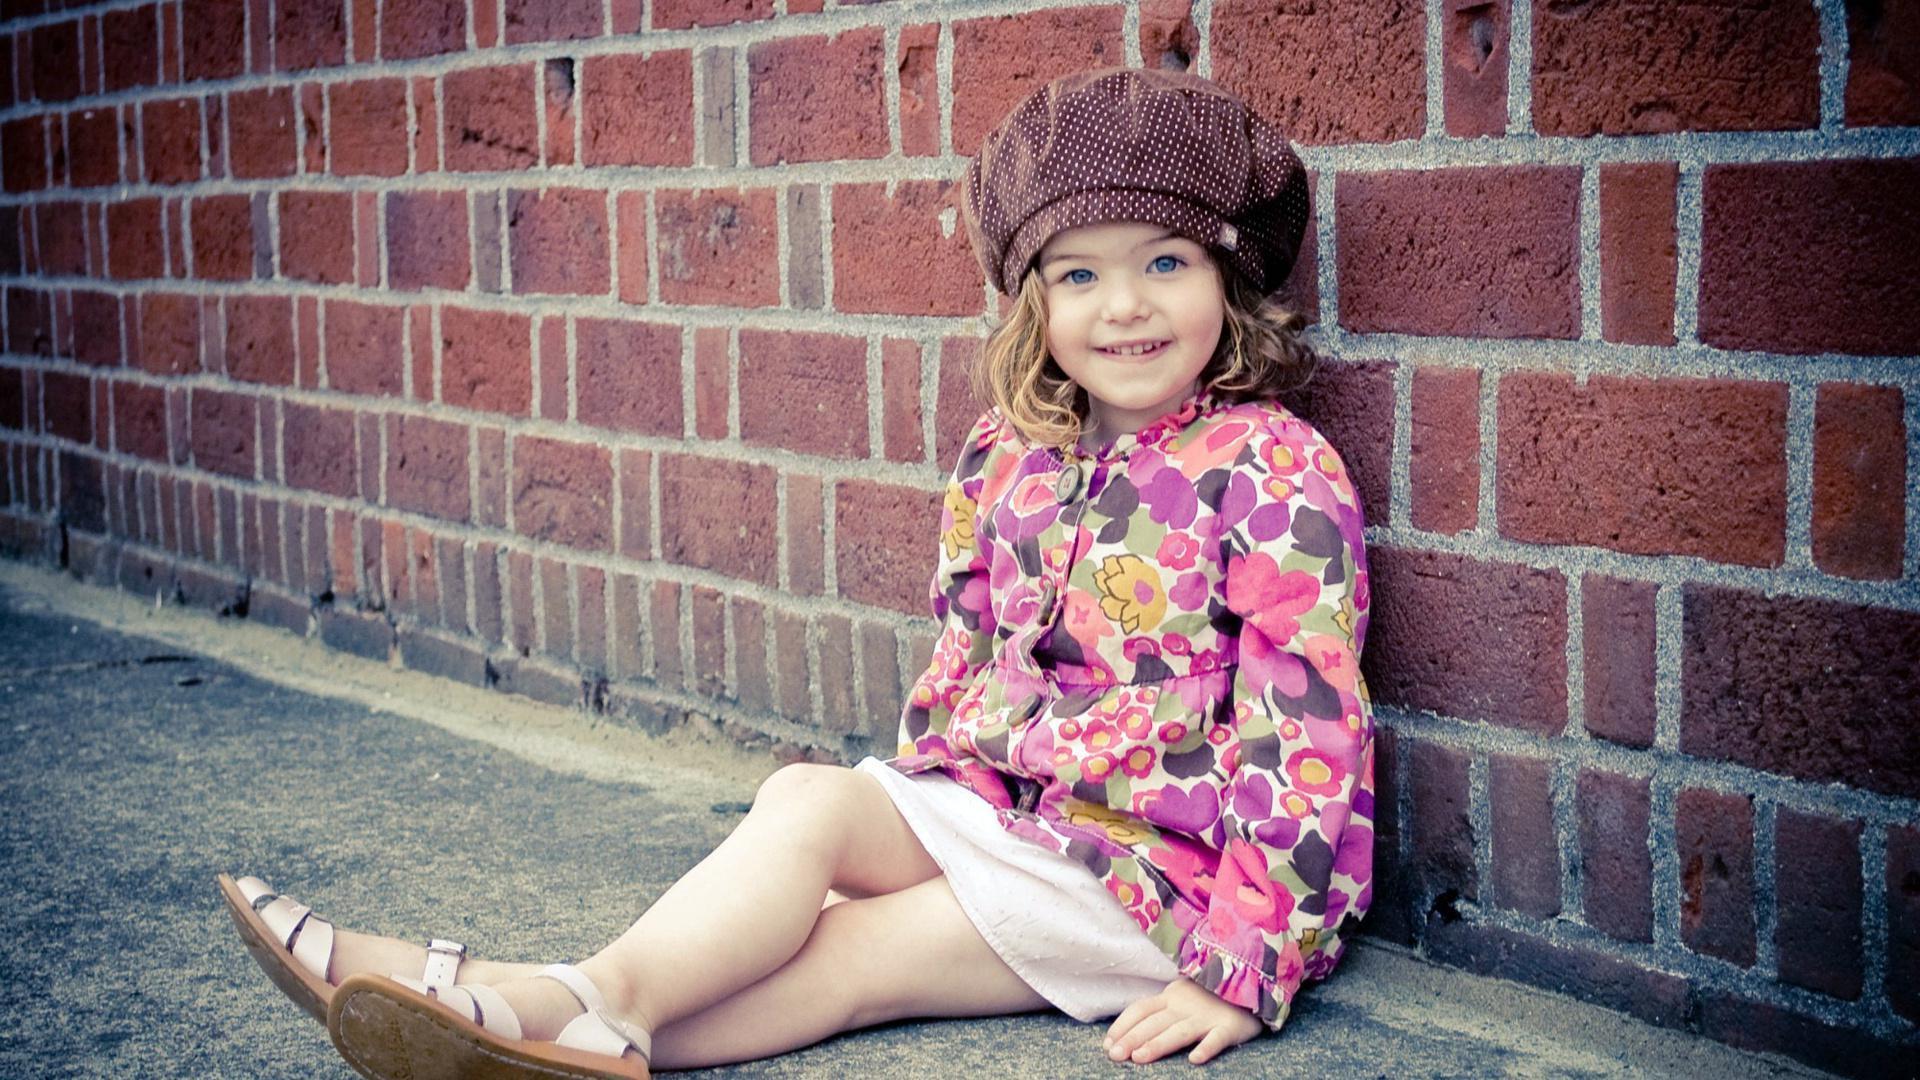 Sweet But Cute Little Girl HD desktop wallpaper, Widescreen, High Definition